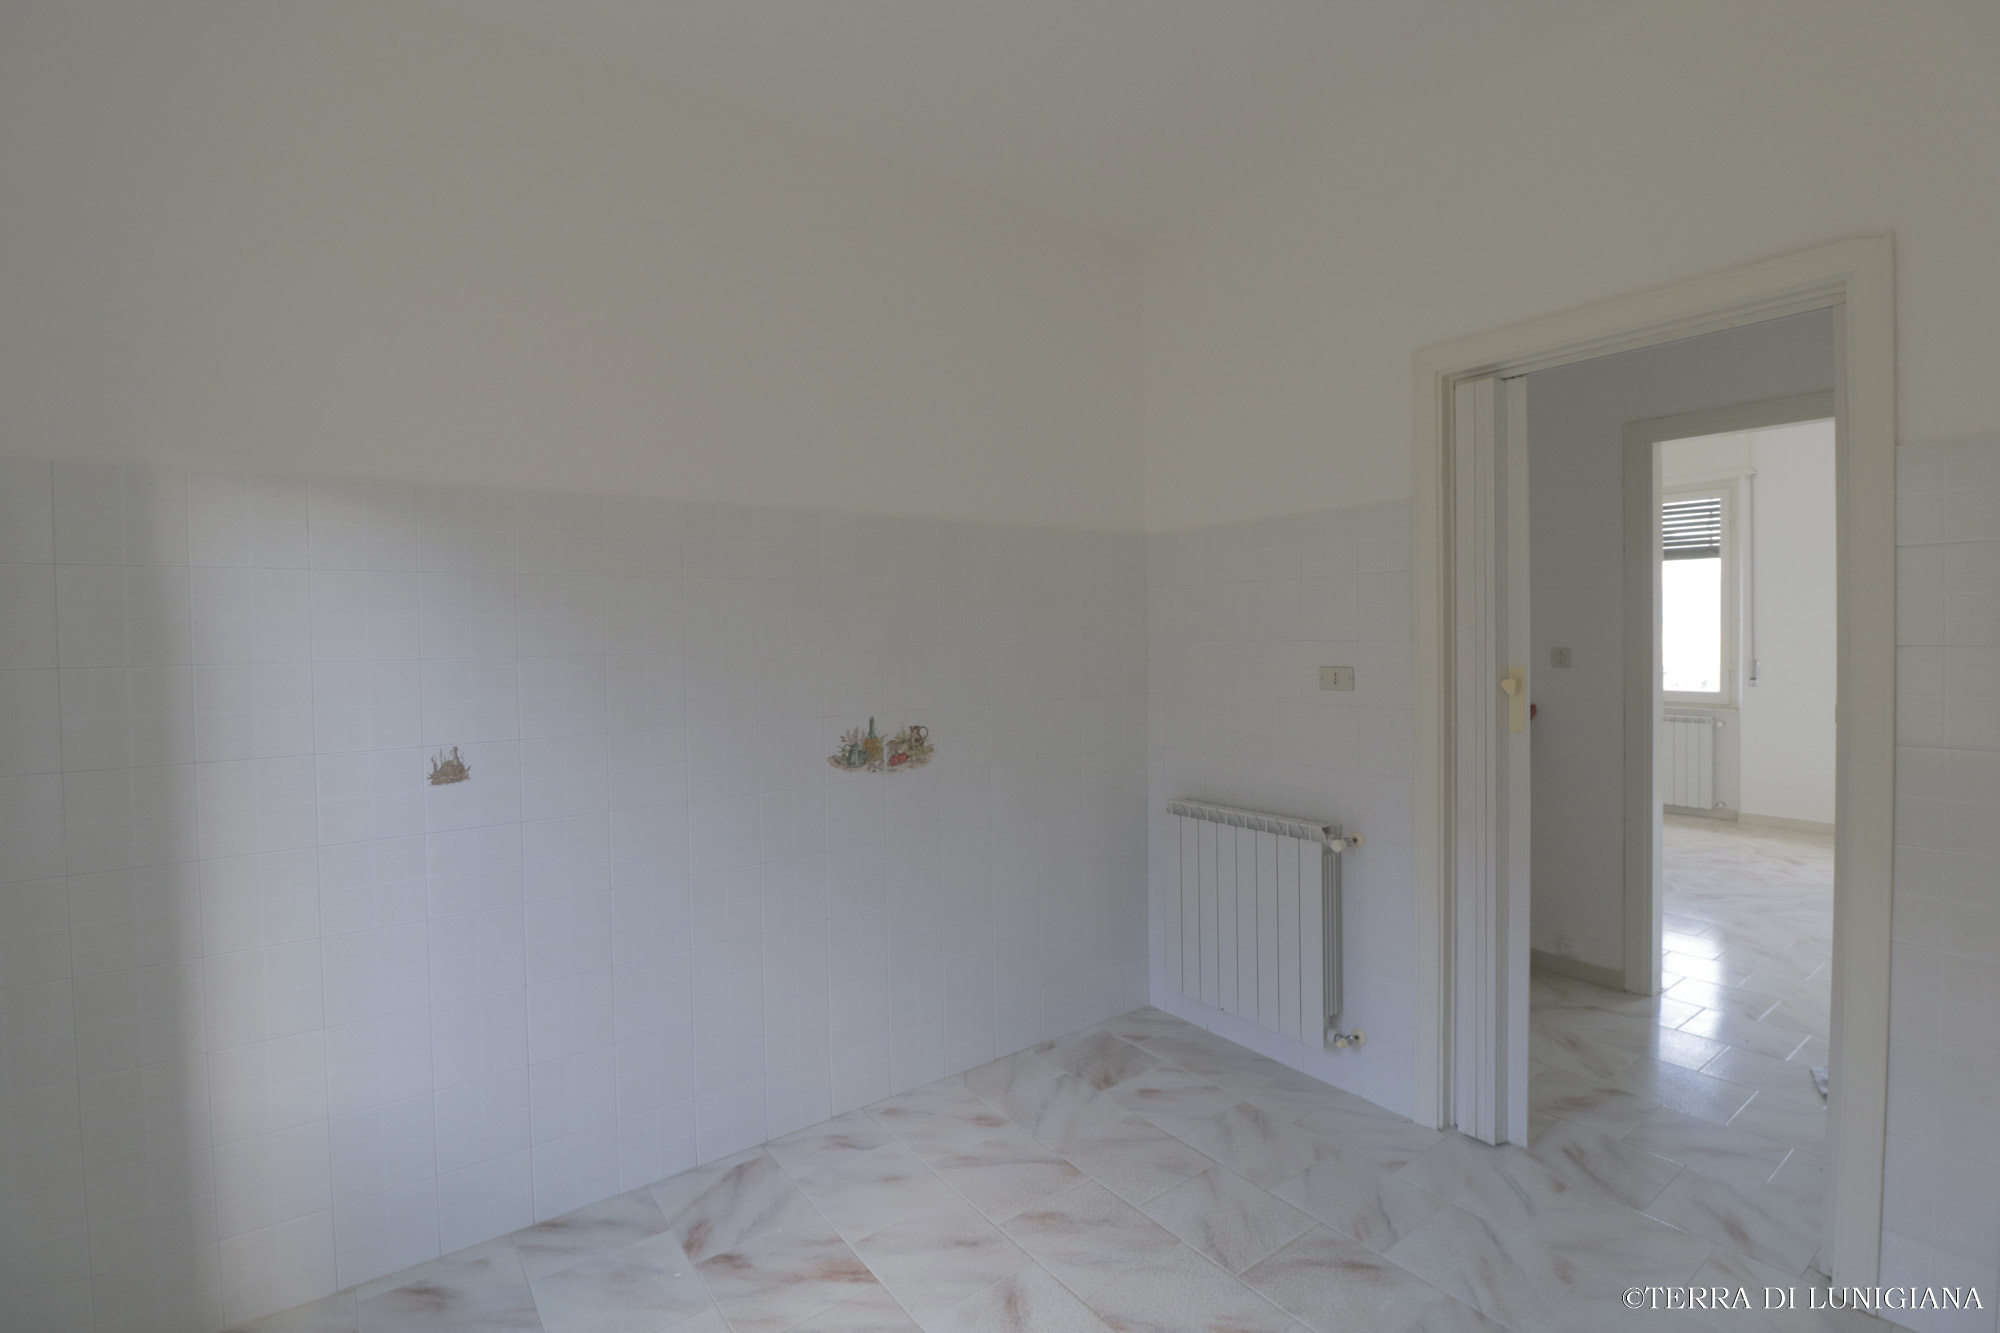 IL POMPELMO – Apartment with Cellar